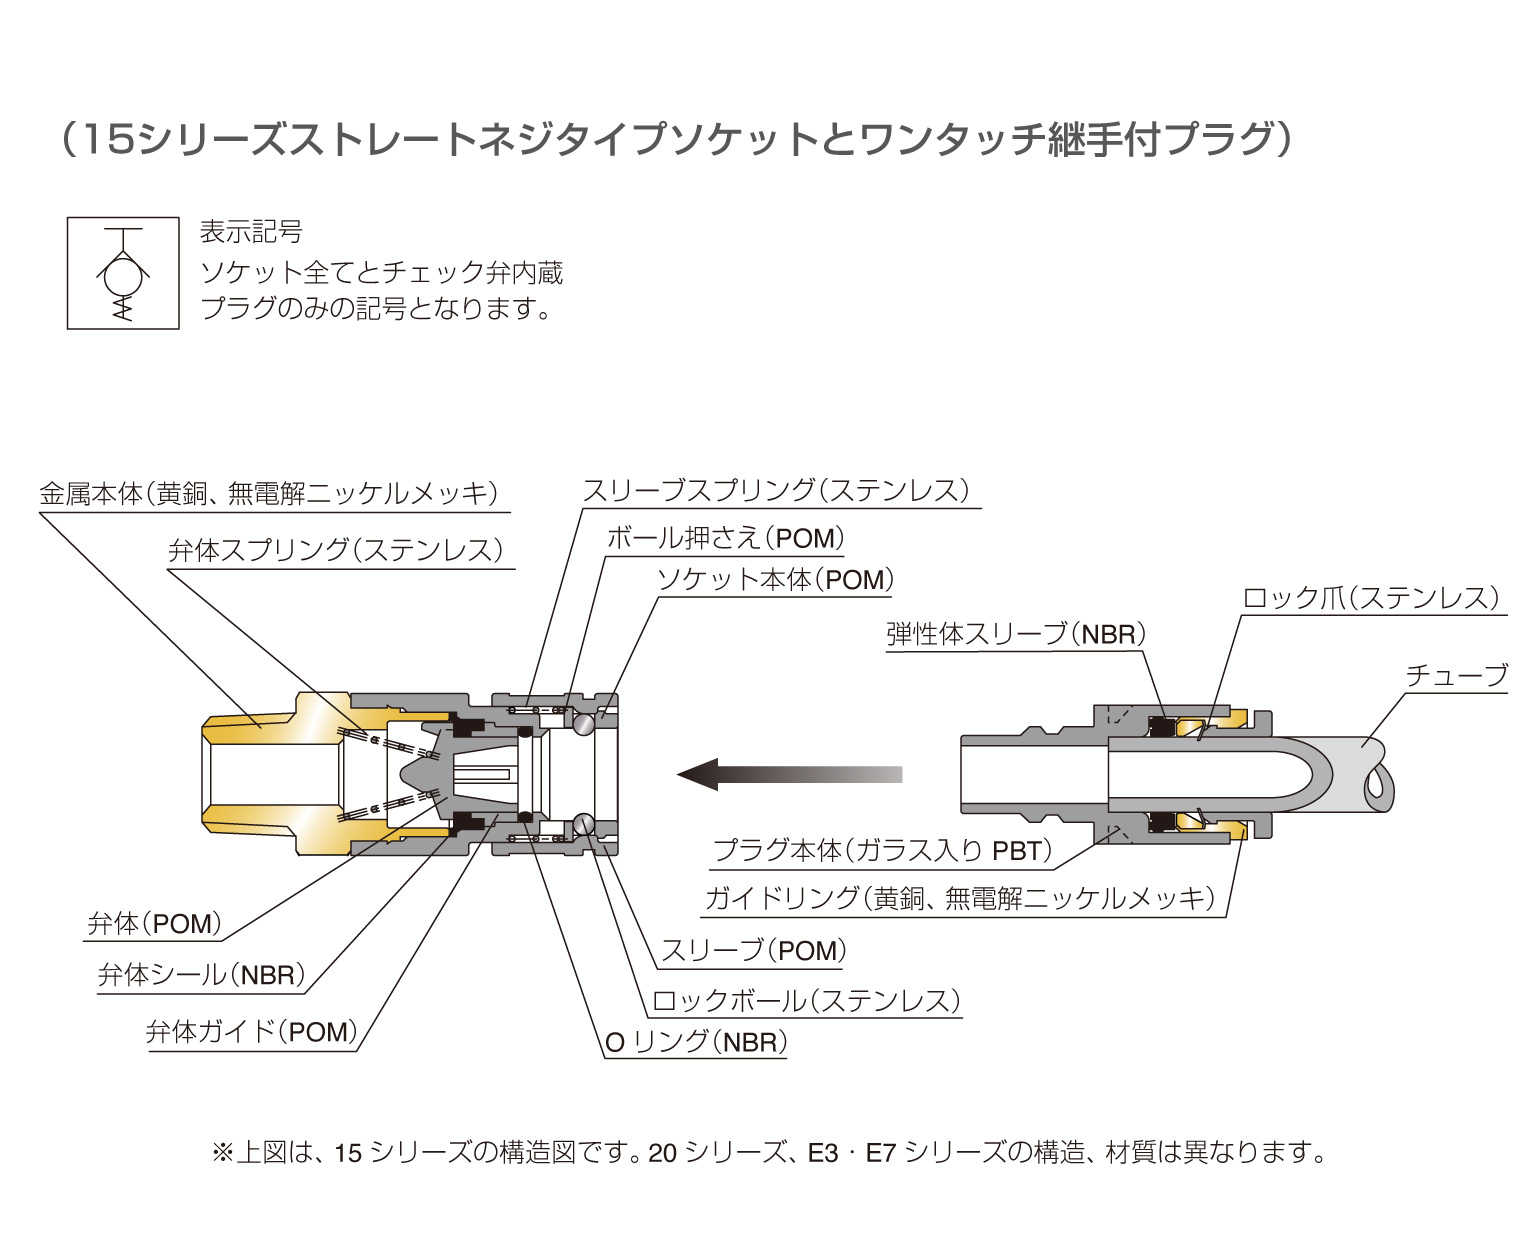 ライトカップリング | PISCO 空気圧機器メーカー 日本ピスコ